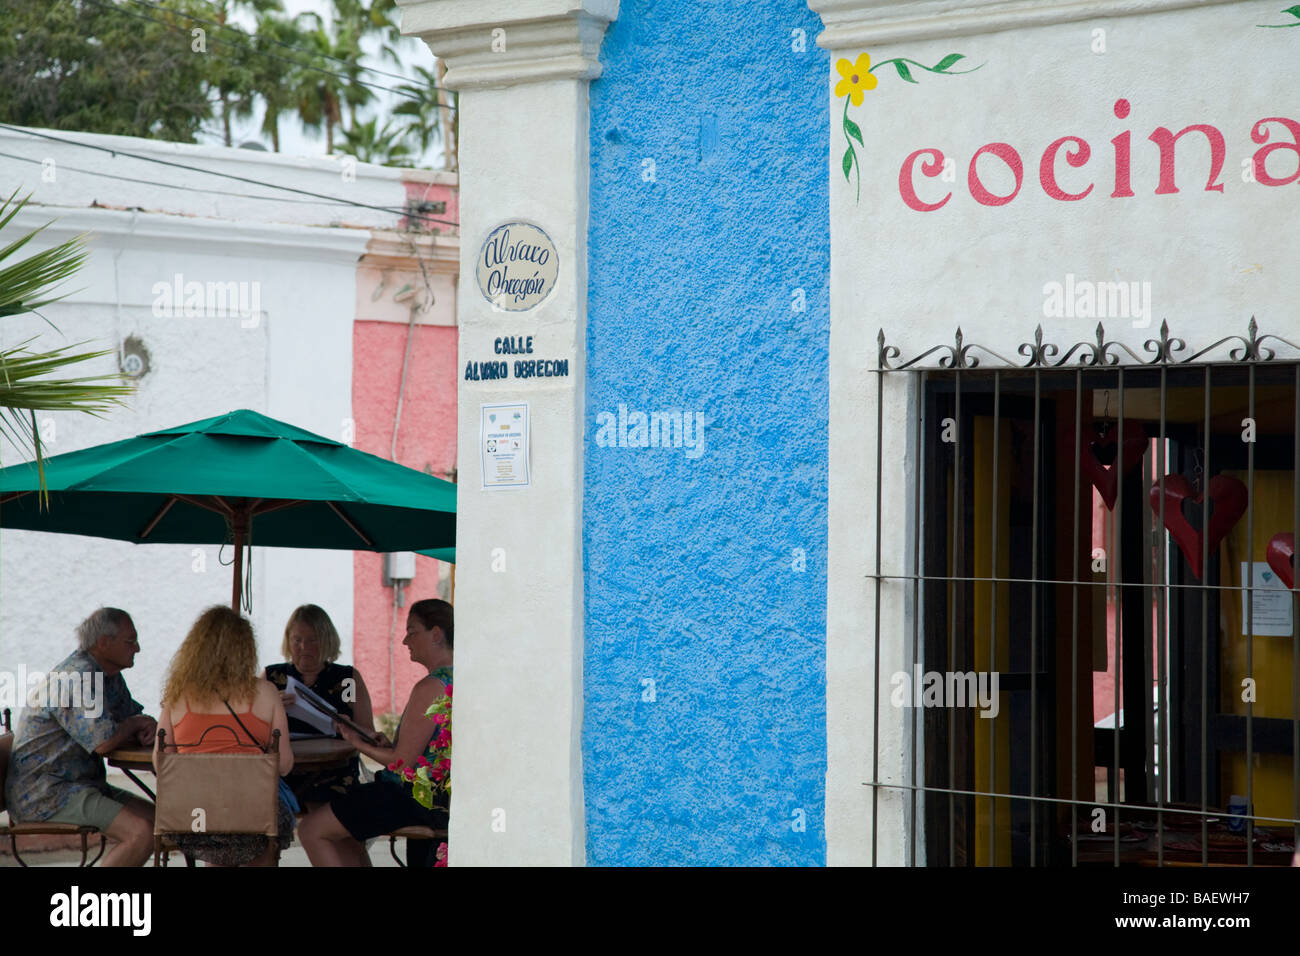 San Jose del Cabo in Mexiko vier Personen Essen im freien Restaurant am Dach Tabelle Straßenschild Metall Bars über Fenster Stockfoto